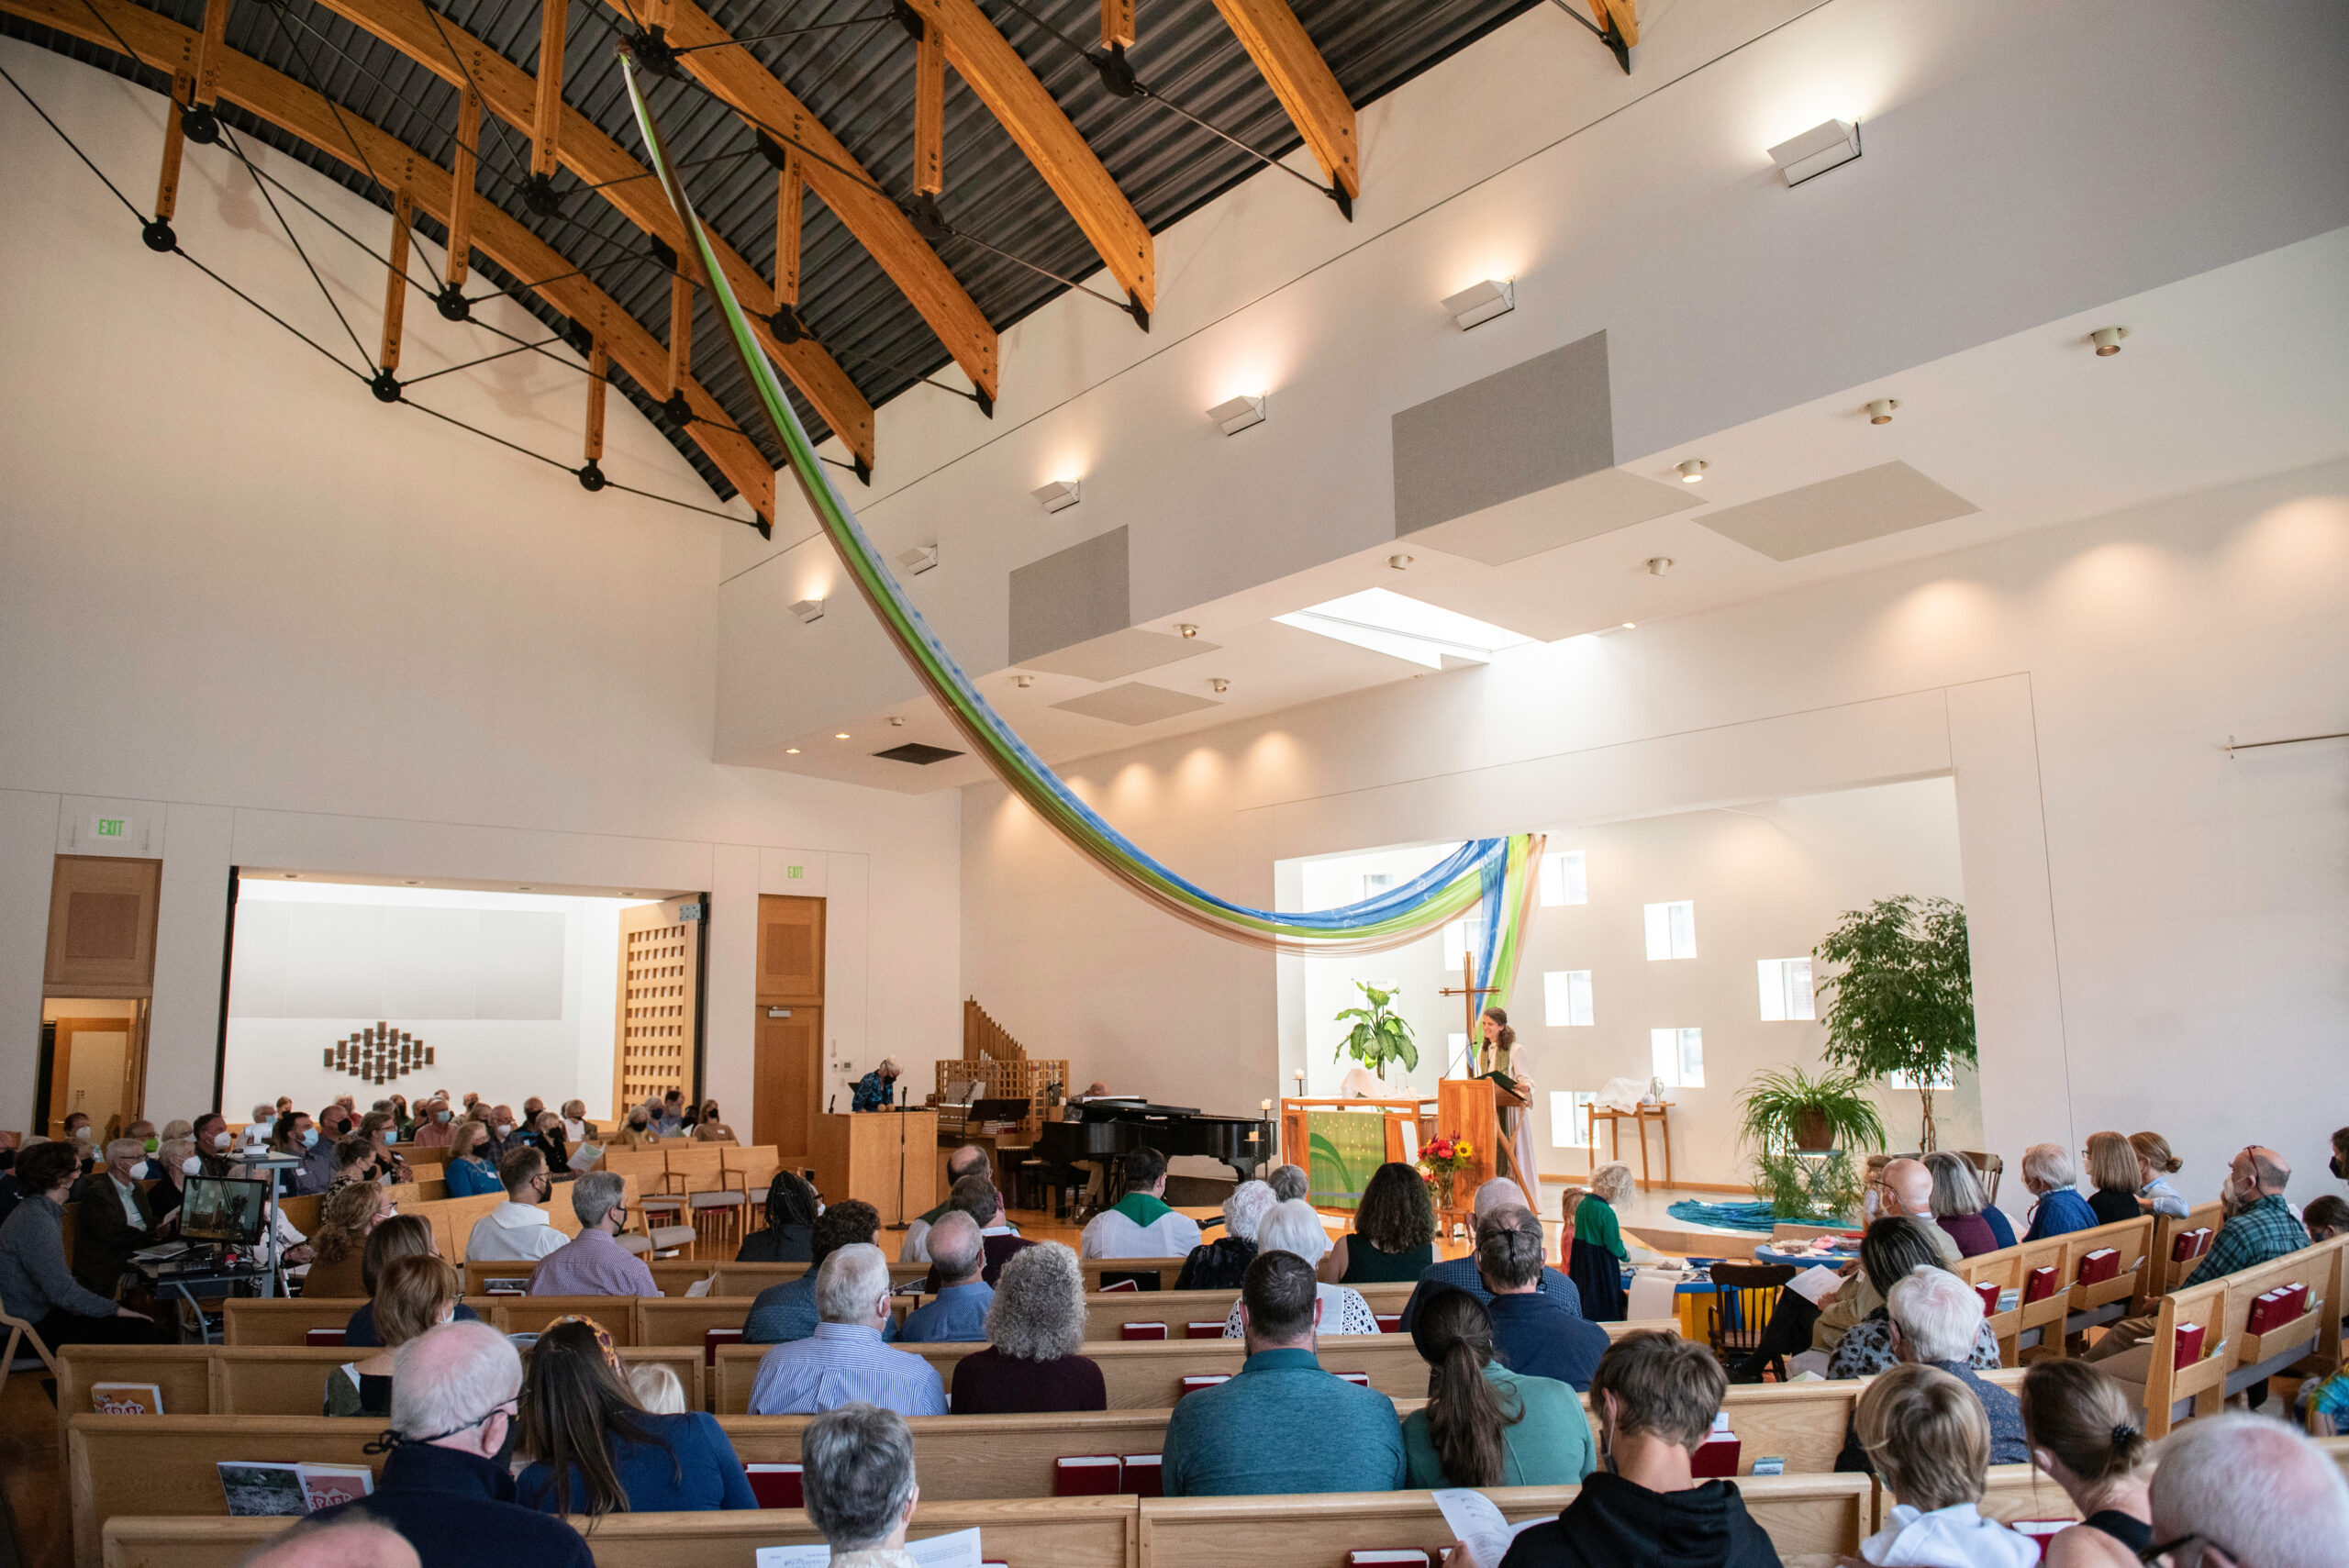 How we worship - Our Saviour's Lutheran Church